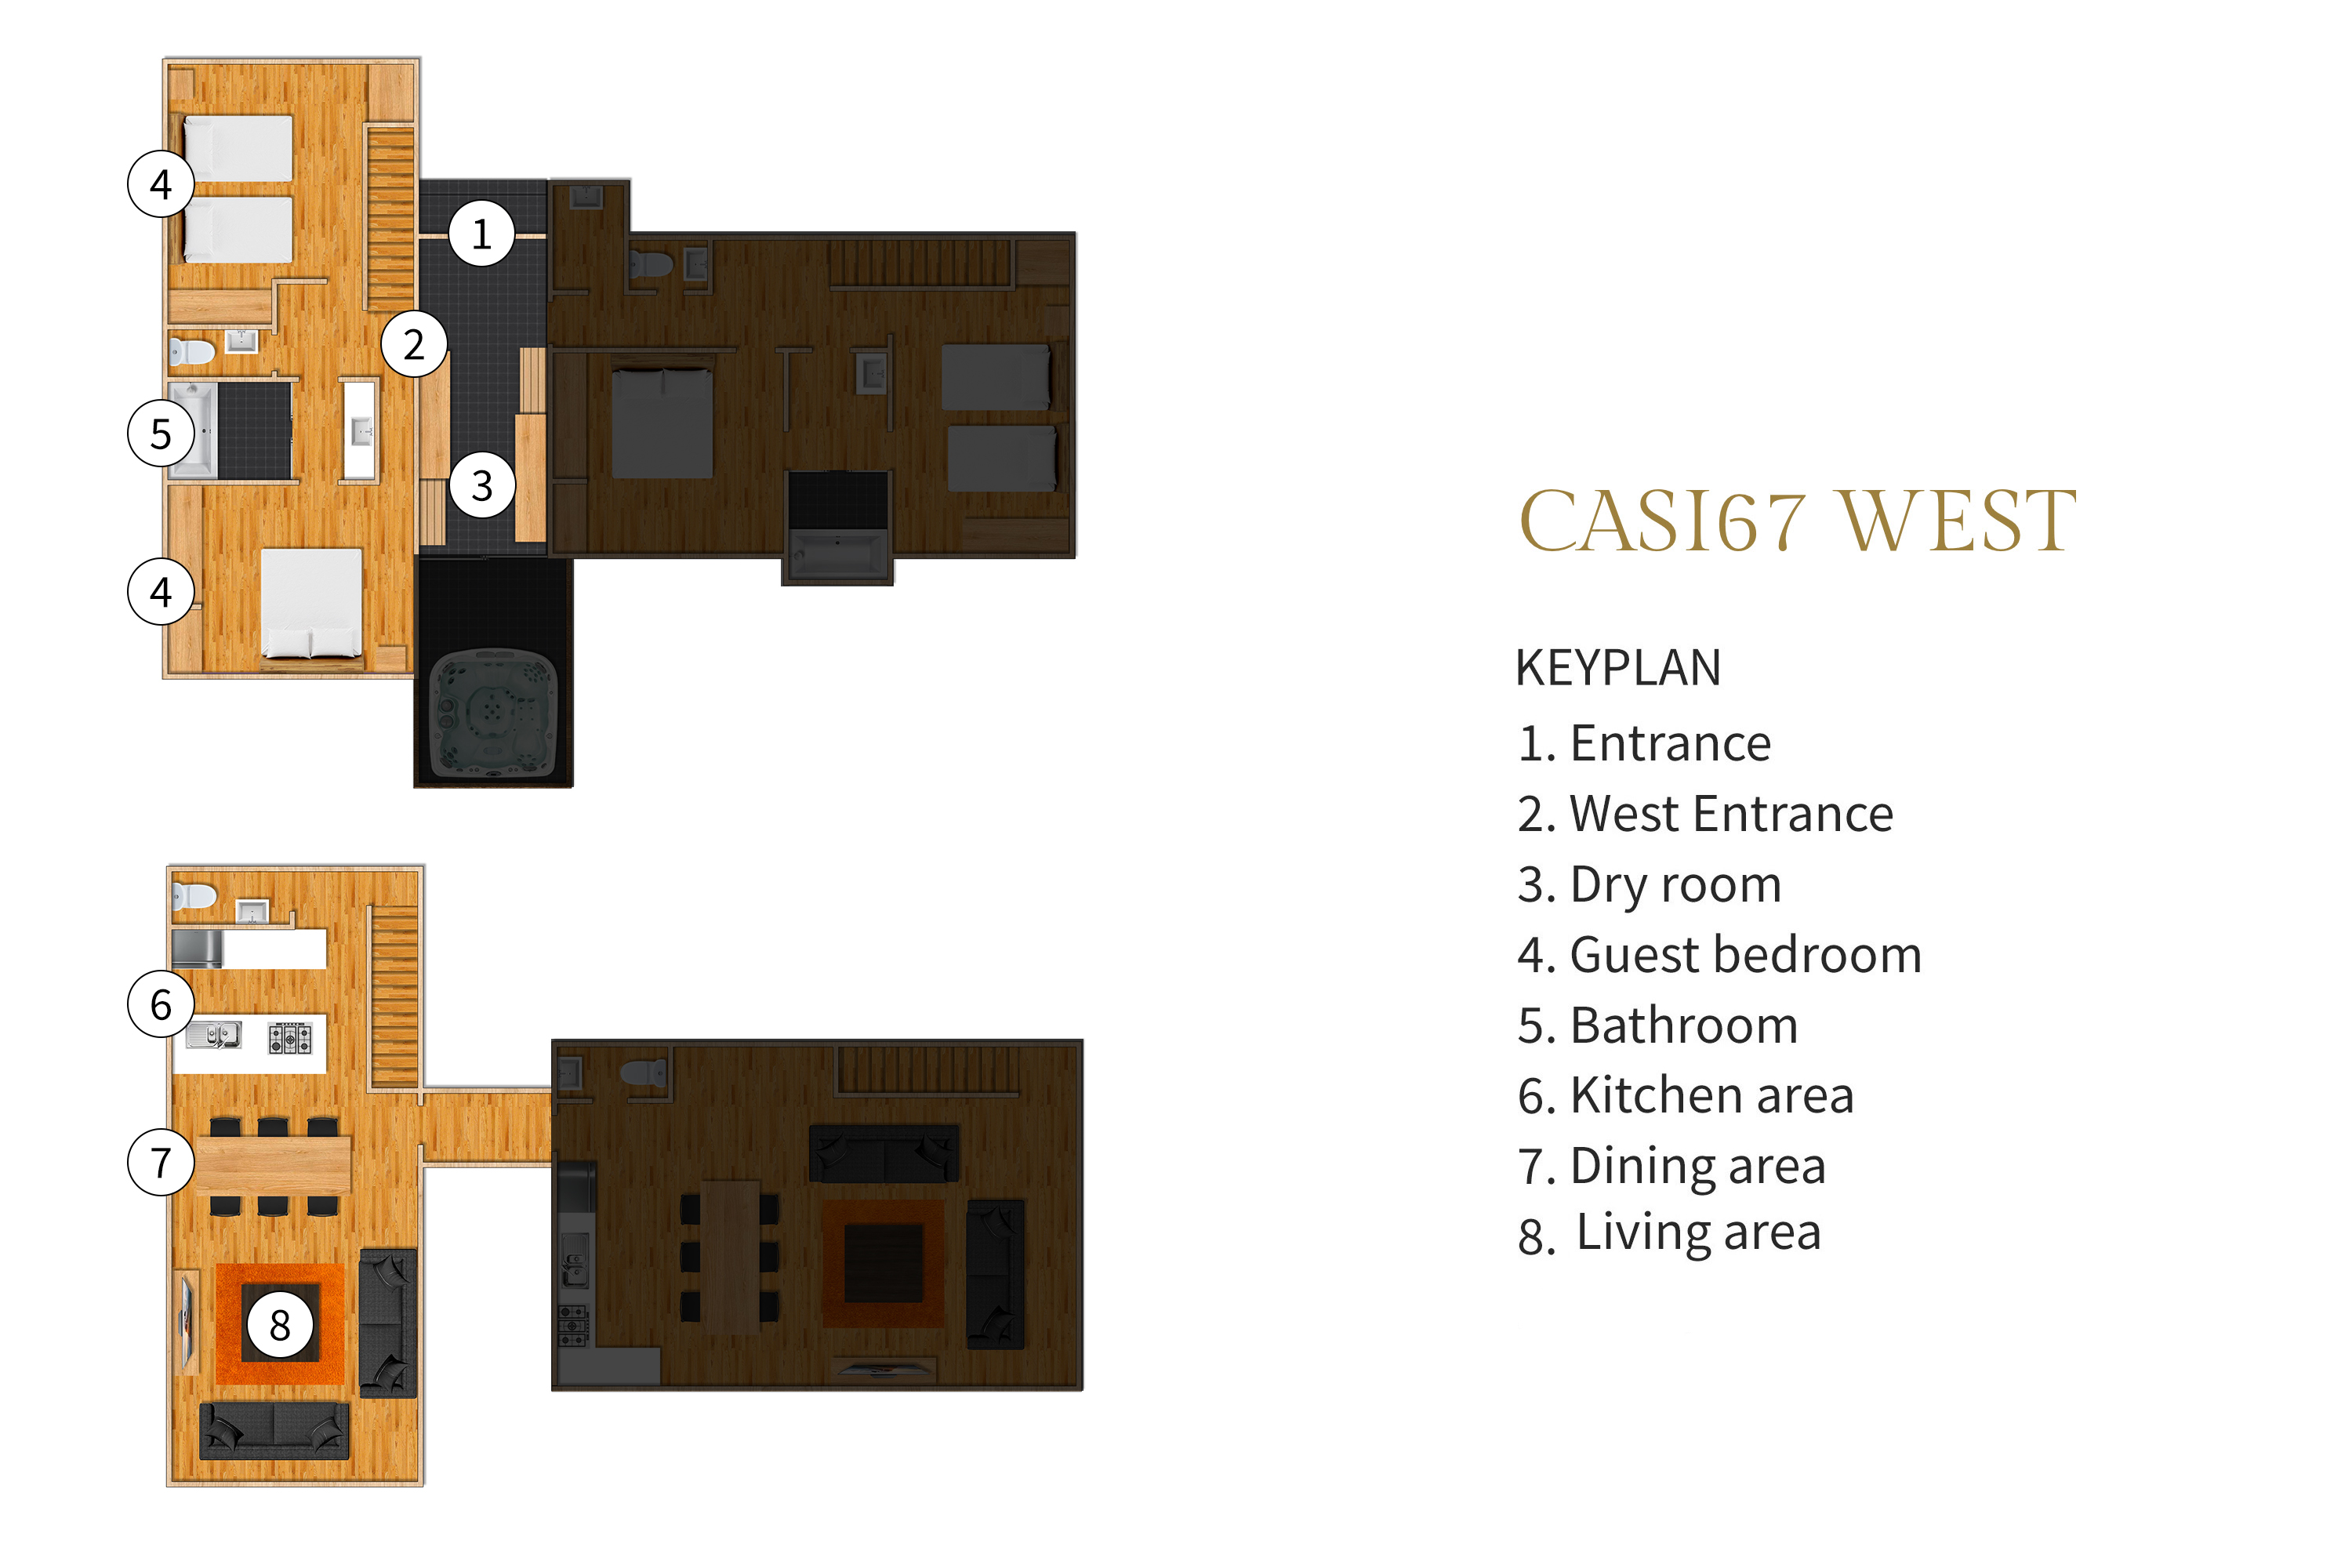 Casi67 West - Floorplan<br />